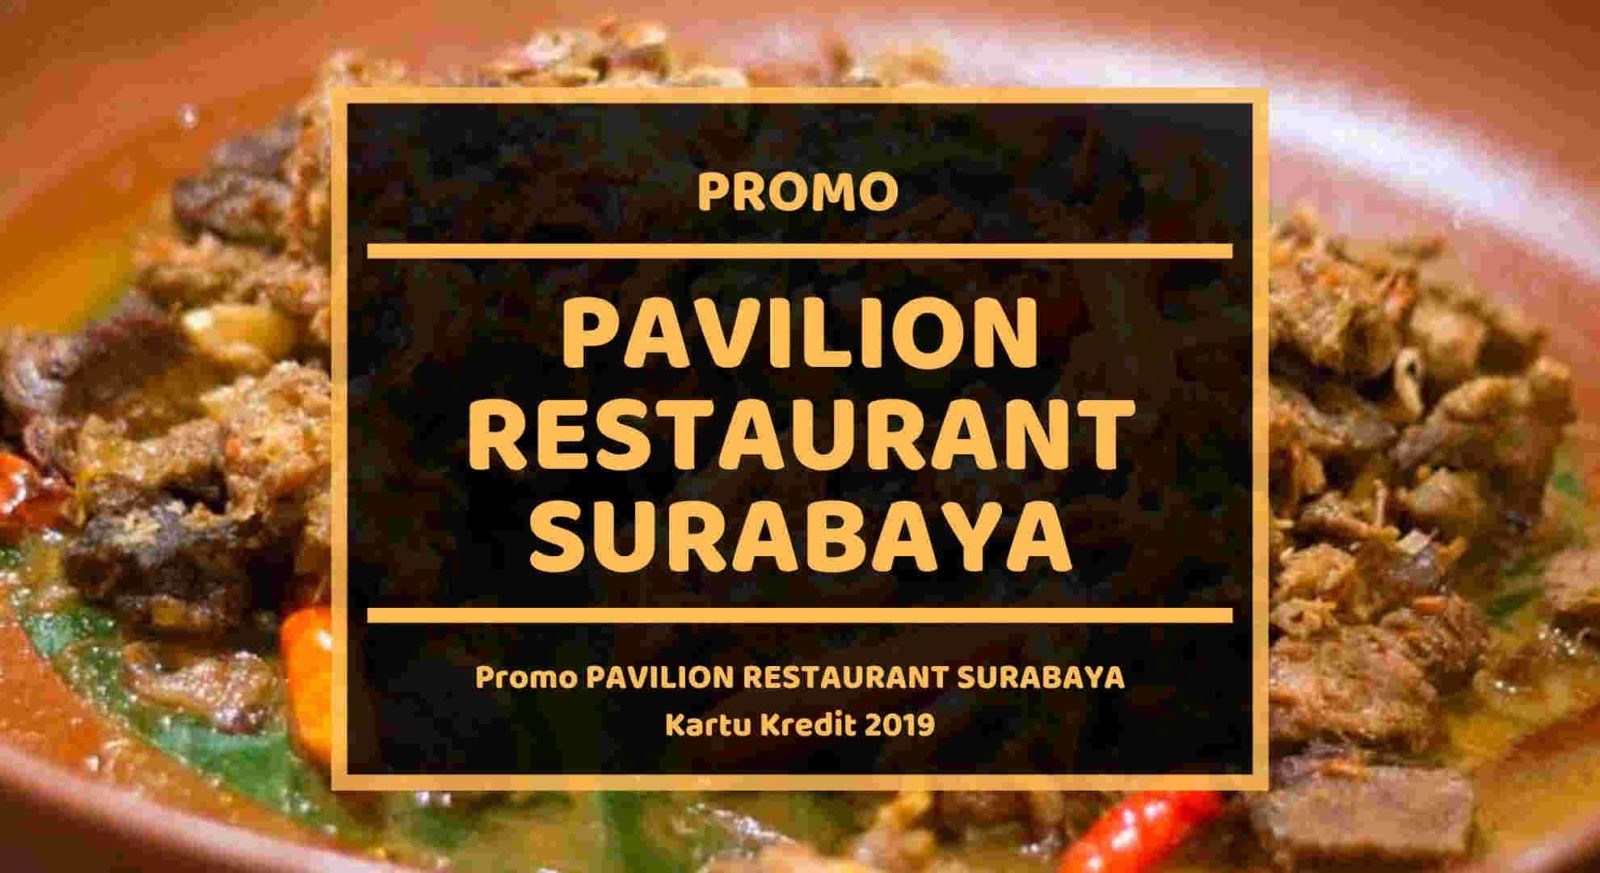 Promo Pavilion Restaurant Surabaya